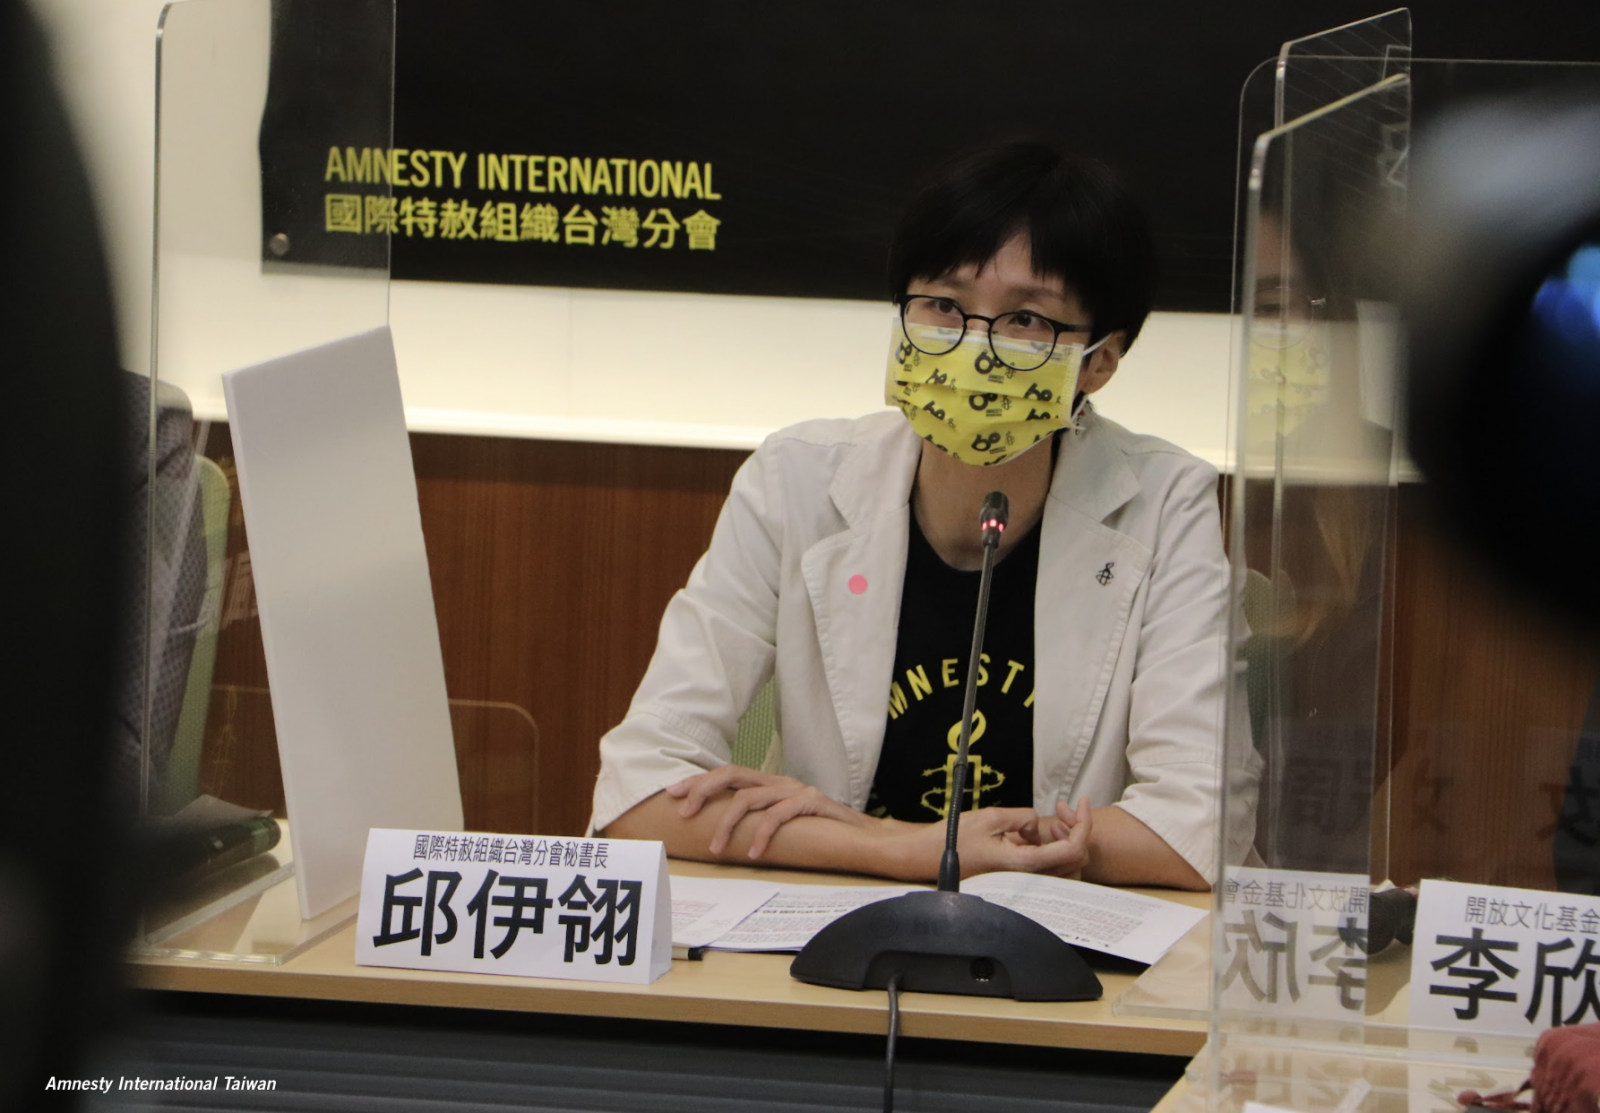 國際特赦組織台灣分會秘書長邱伊翎呼籲政府保留非晶片身分證作為身分識別的選項之一